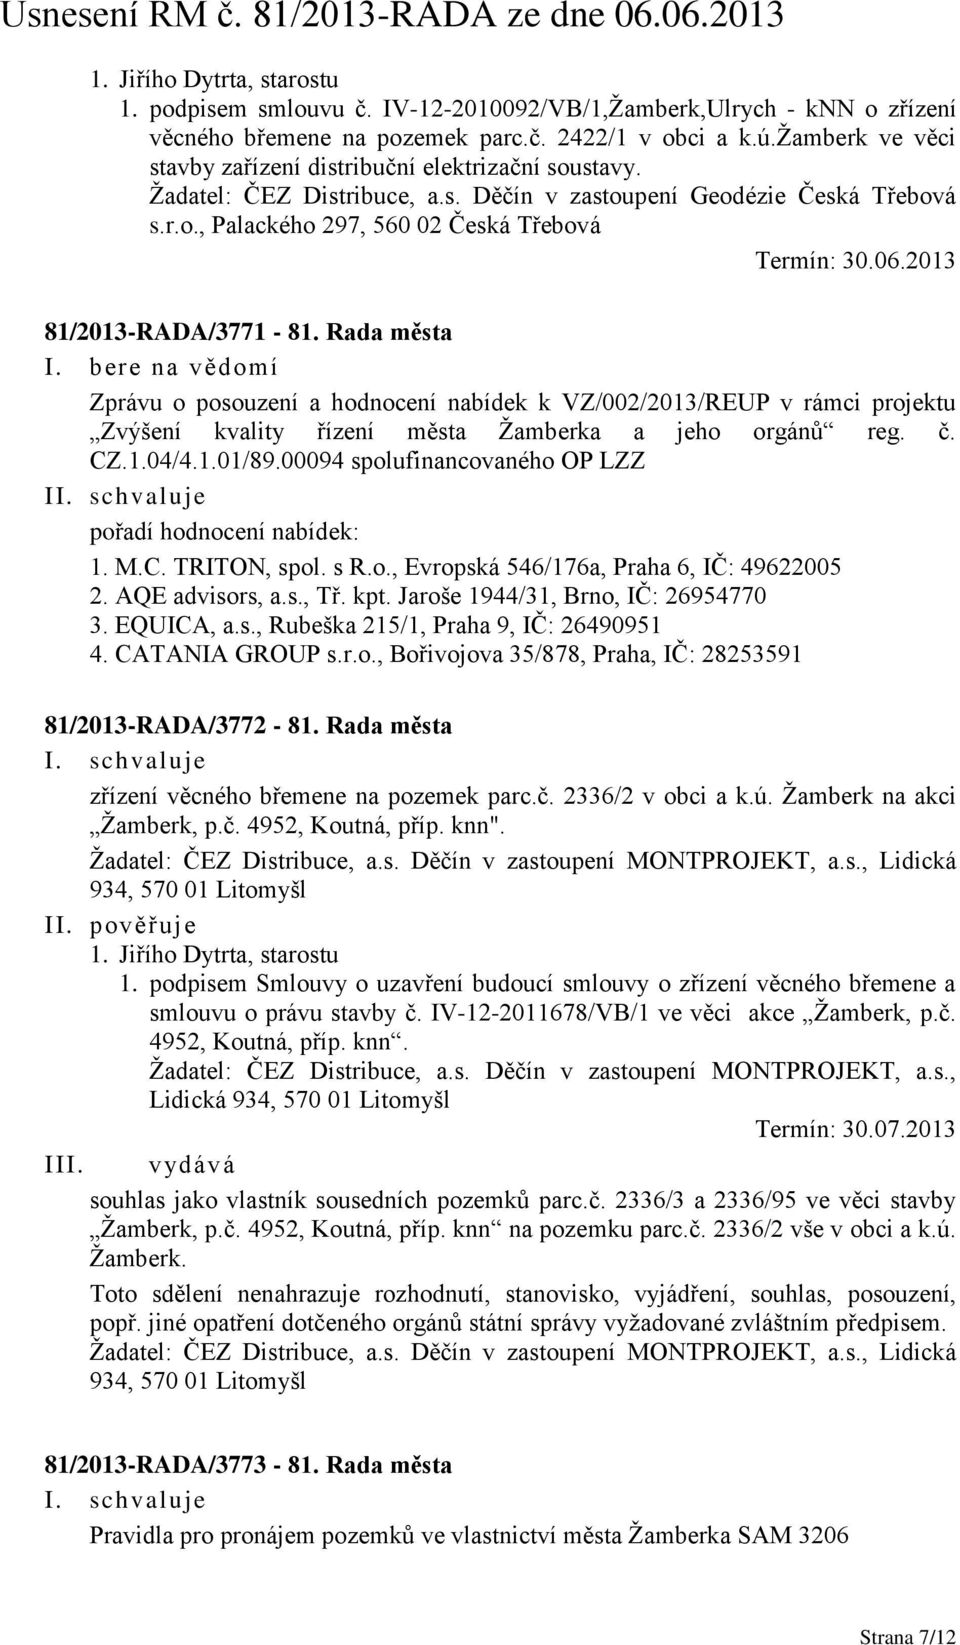 Rada města Zprávu o posouzení a hodnocení nabídek k VZ/002/2013/REUP v rámci projektu Zvýšení kvality řízení města Žamberka a jeho orgánů reg. č. CZ.1.04/4.1.01/89.